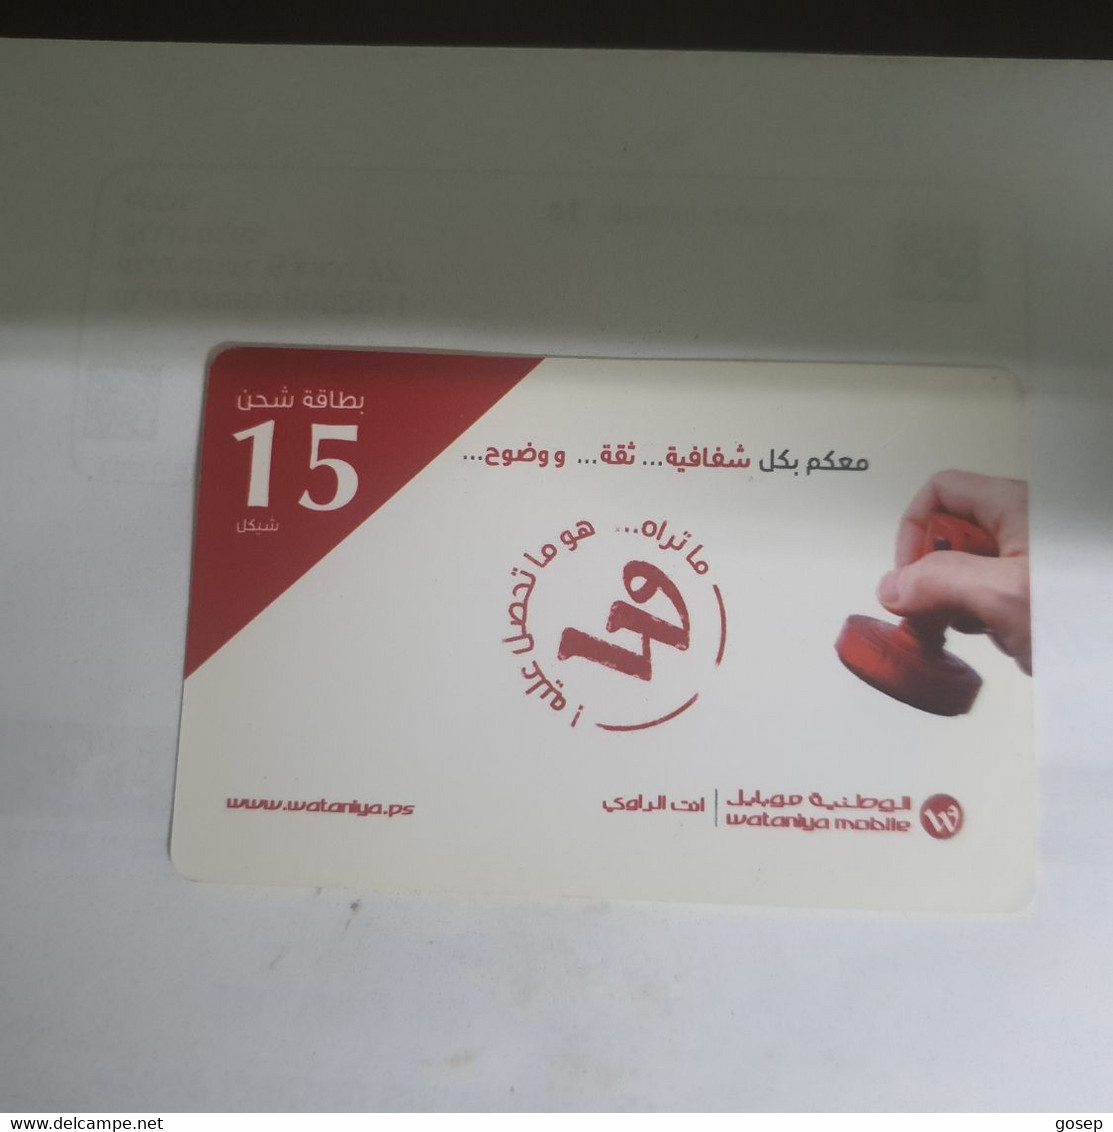 PALESTINE-(PS-WAT-REF-0005D)-Mobile 15-(382)-(7869-8398-9213-4367)-(1/8/2015)used Card+1prepiad Free - Palestine